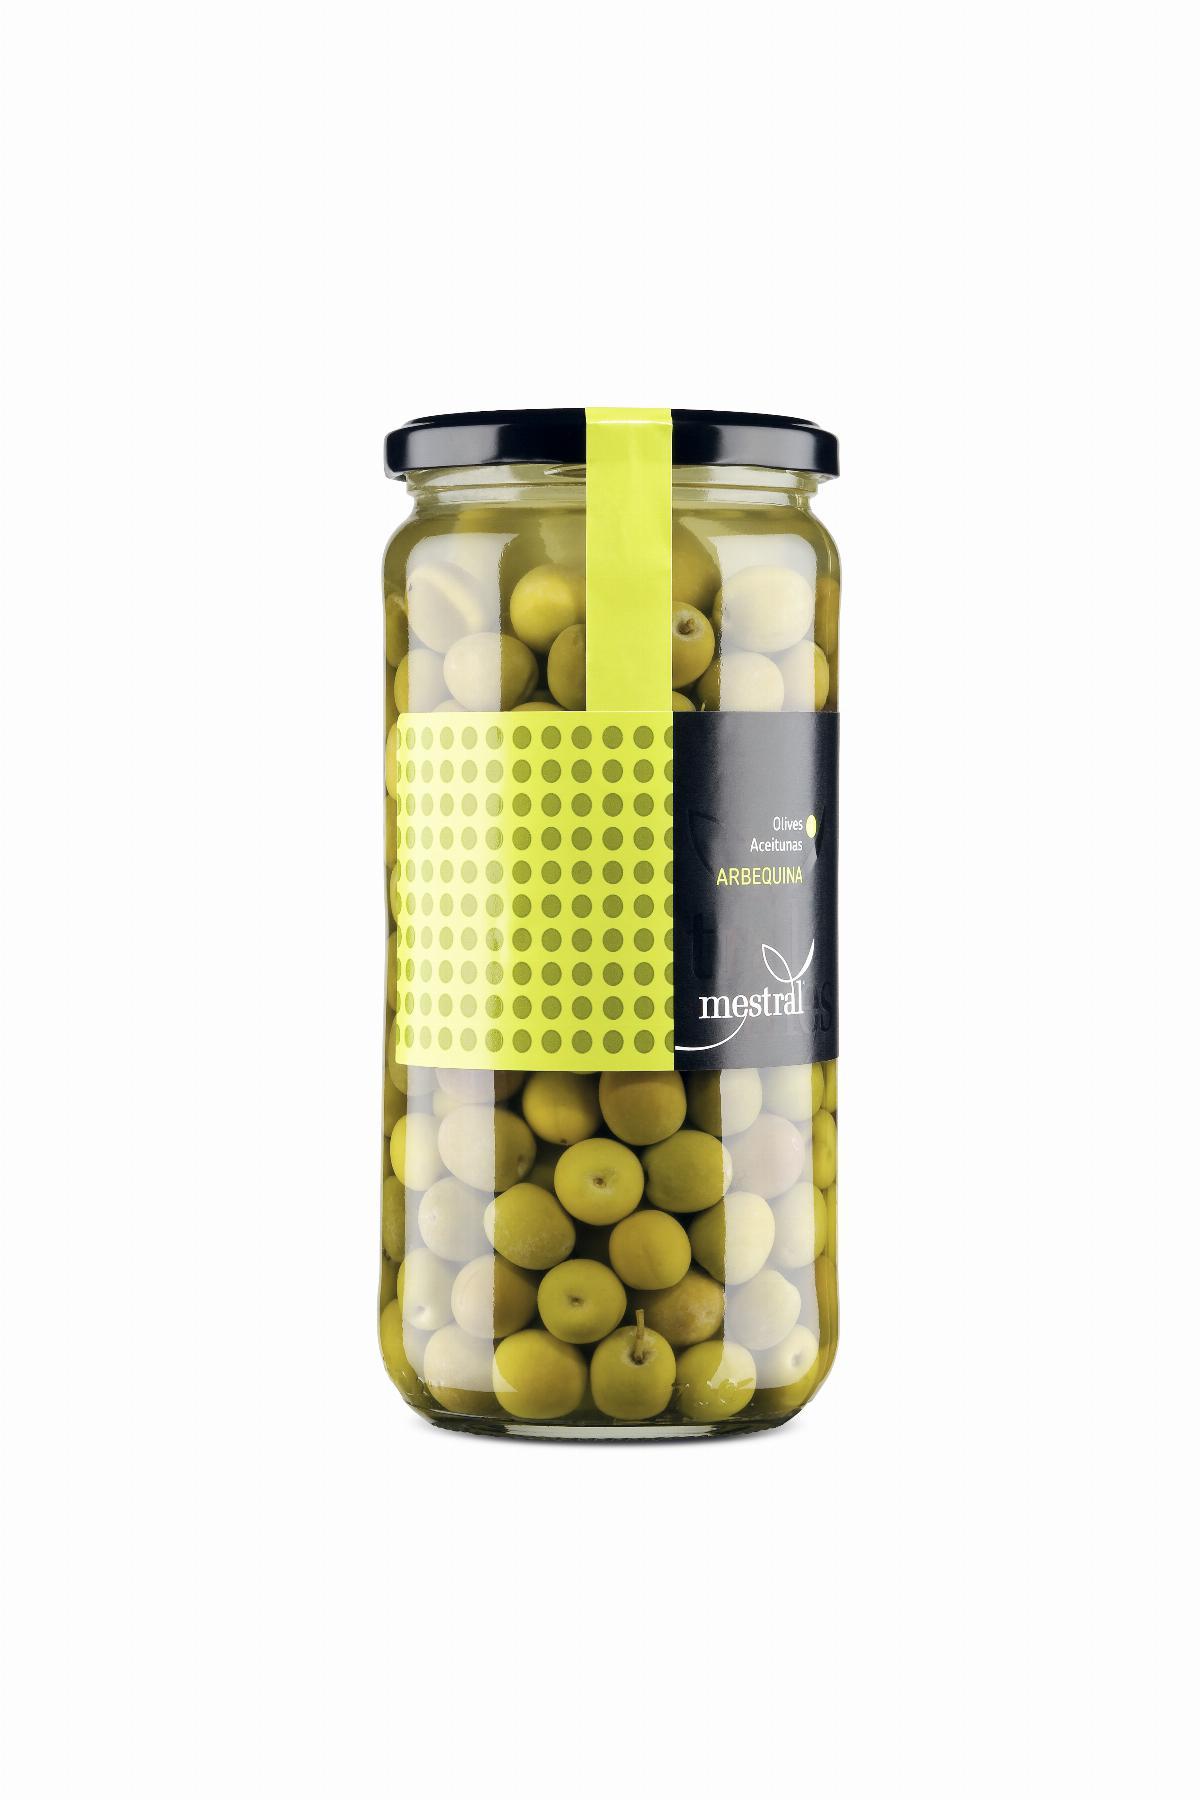 Olives - Mestral Arbequina Olives, glass jar 440g - Mestral Cambrils